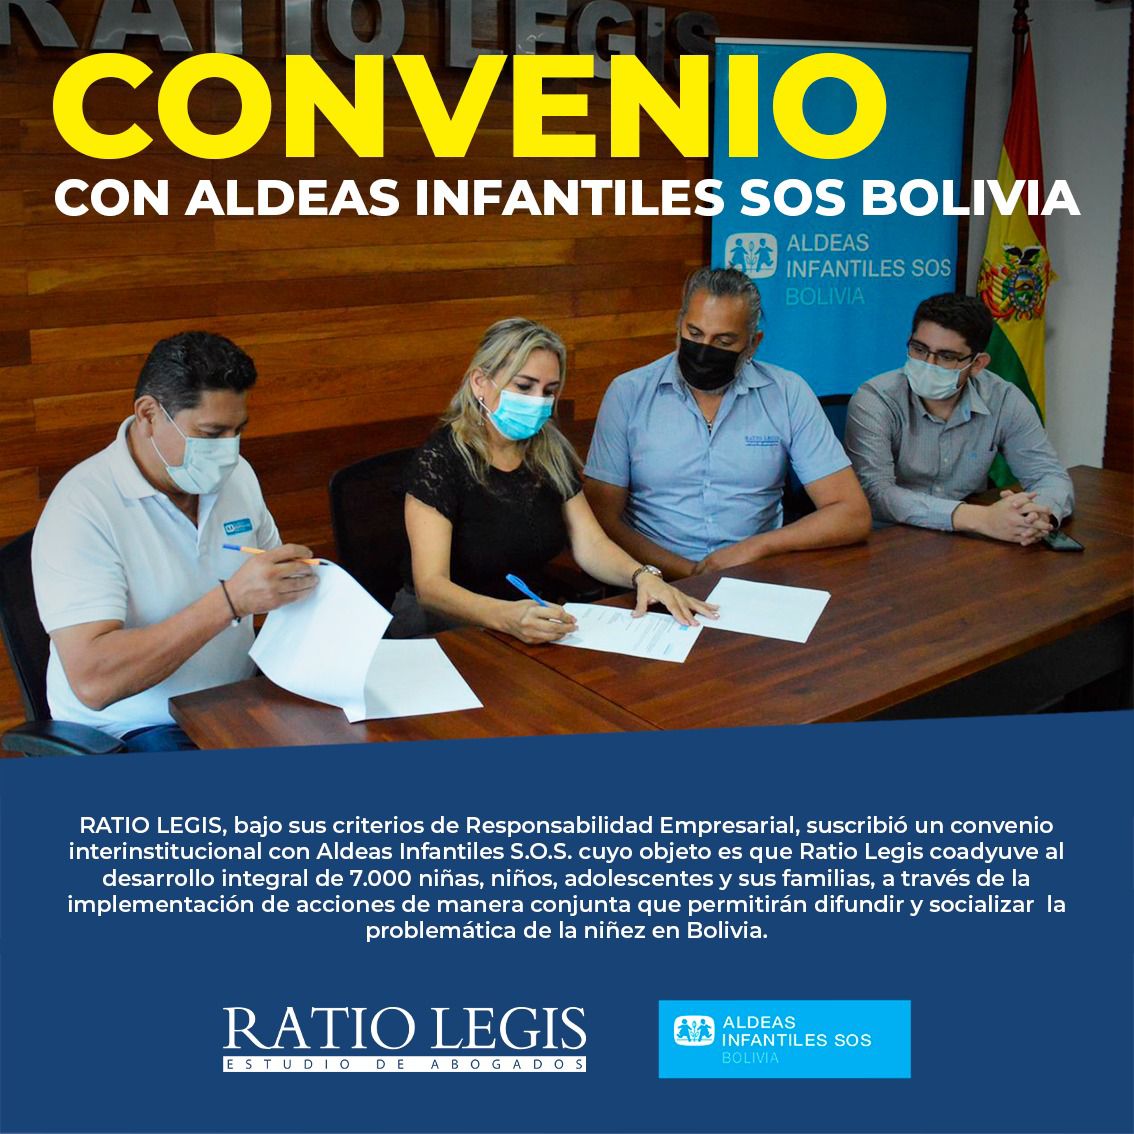 (Español) Convenio con Aldeas Infantiles SOS Bolivia